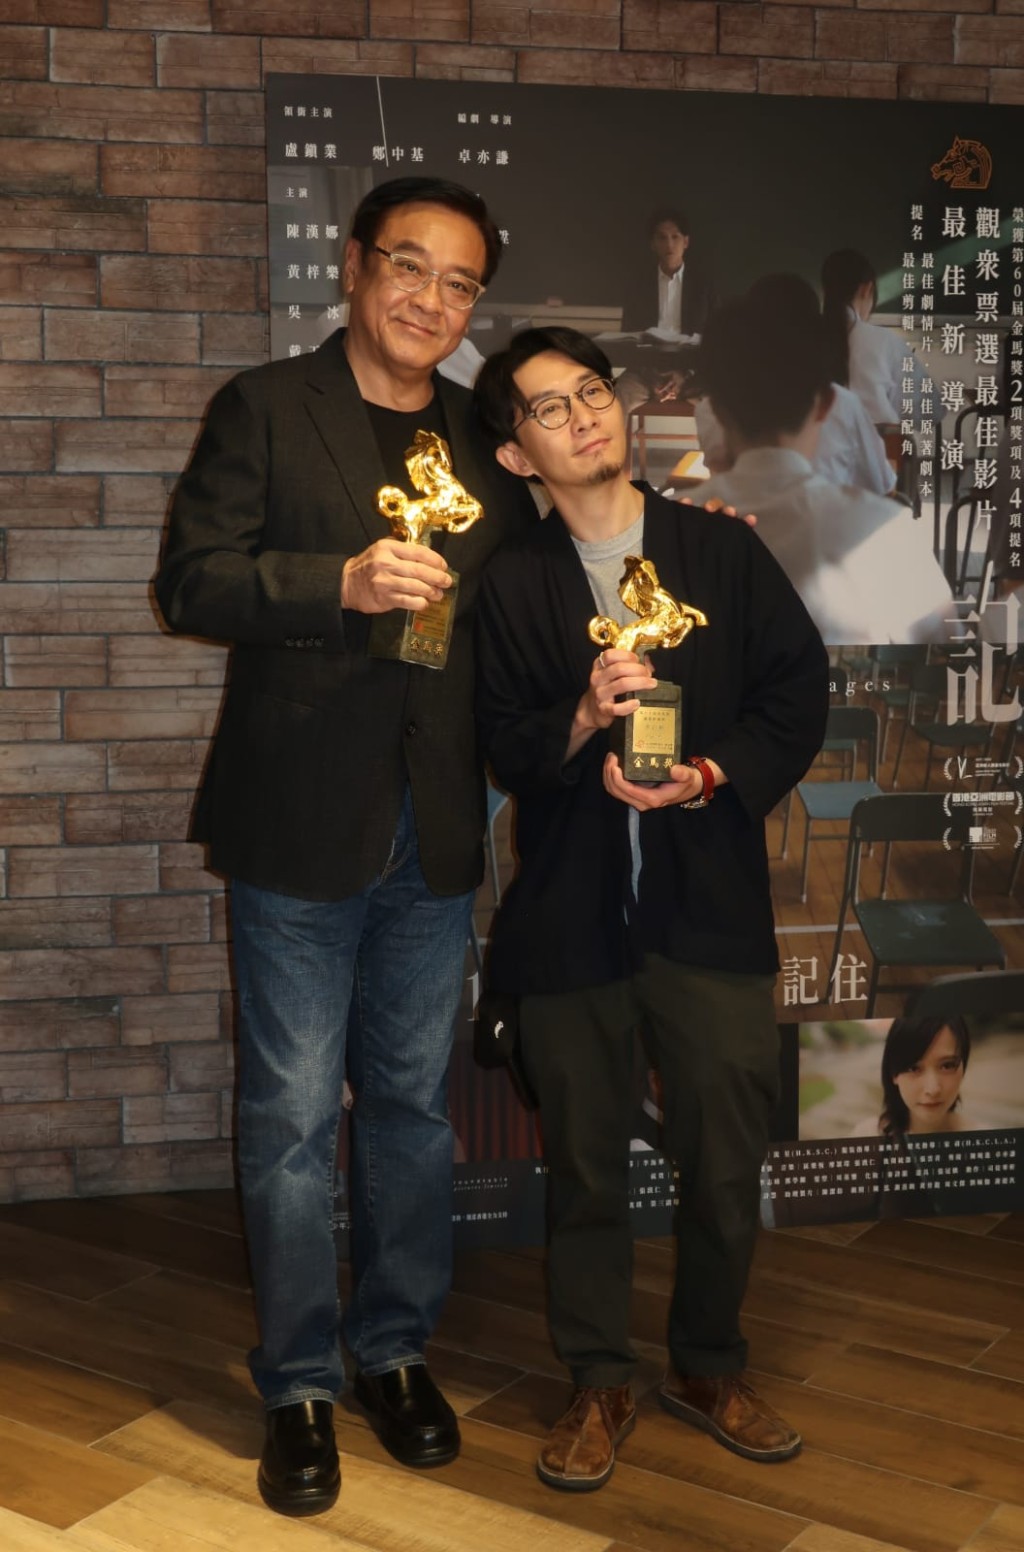 卓亦谦早前已夺得「第60届金马奖」、「第17届亚洲电影大奖」及「2023年度香港电影导演会年度大奖」的导演奖项。